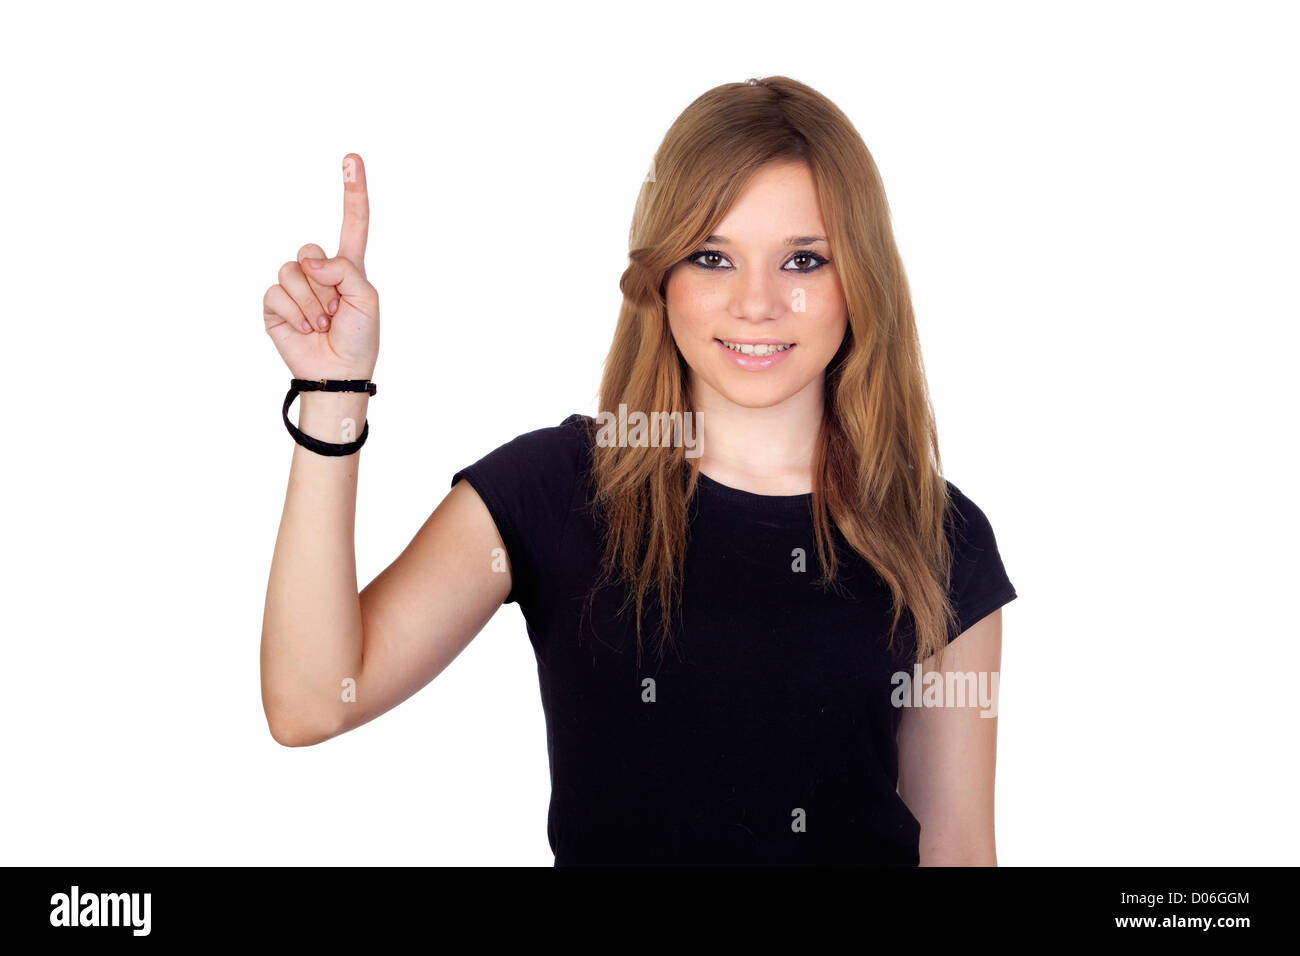 Vincitore donna bionda con camicia nera chiedendo la parola isolata su sfondo bianco Foto Stock